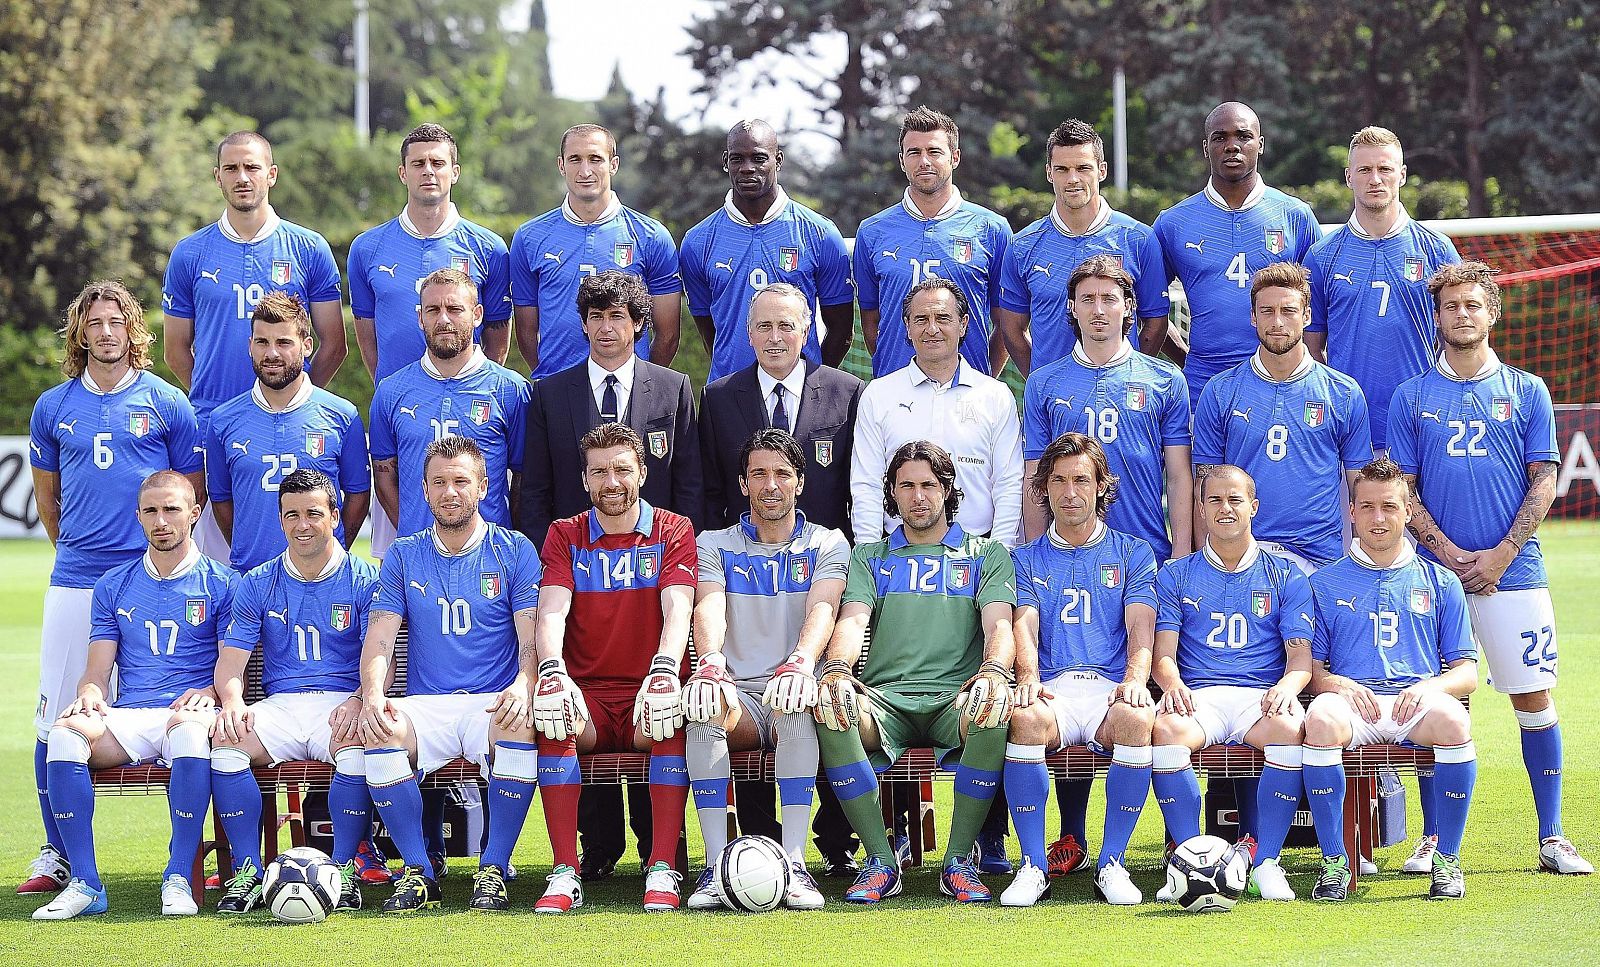 Los componentes de la selección italiana de fútbol que competirán en la Eurocopa 2012